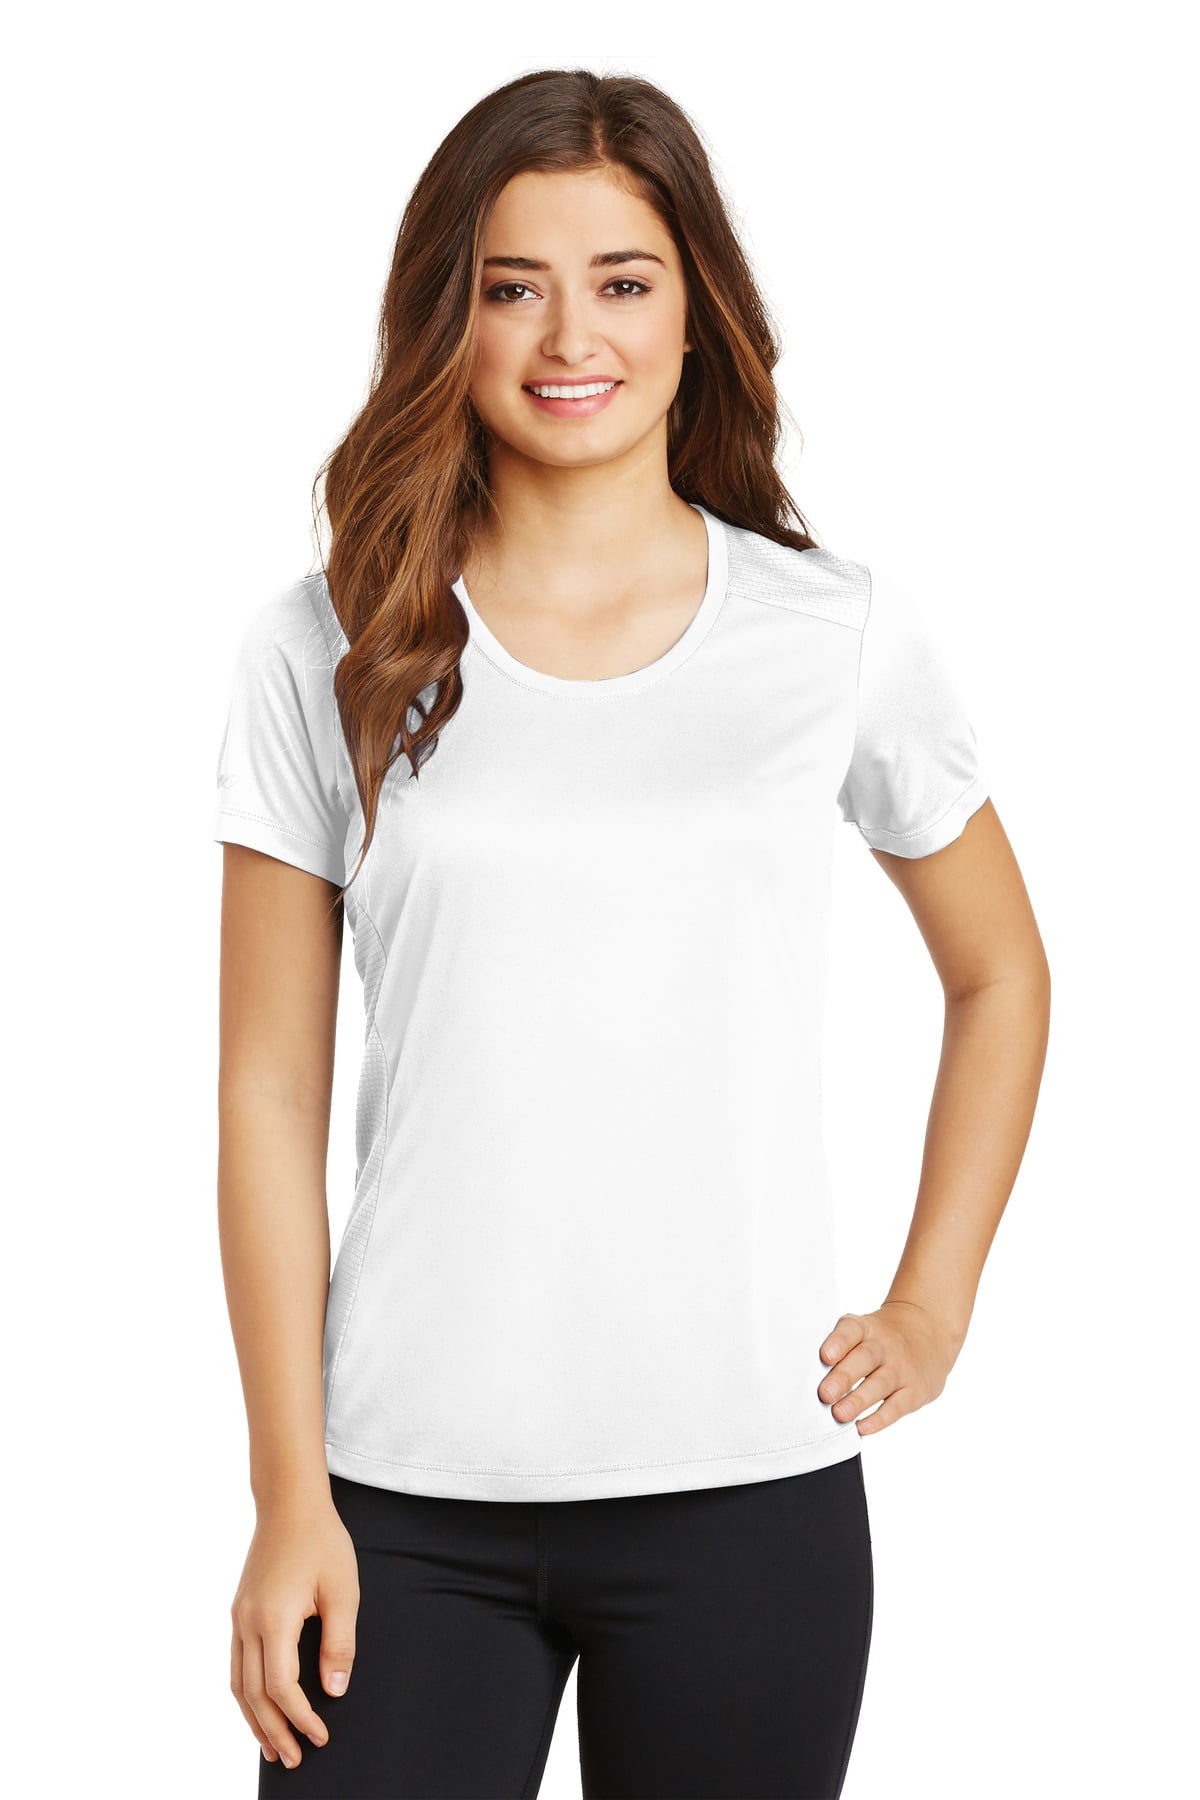 Sport Tek Adult Female Women Plain Short Sleeves T-Shirt Lime Shock Medium  